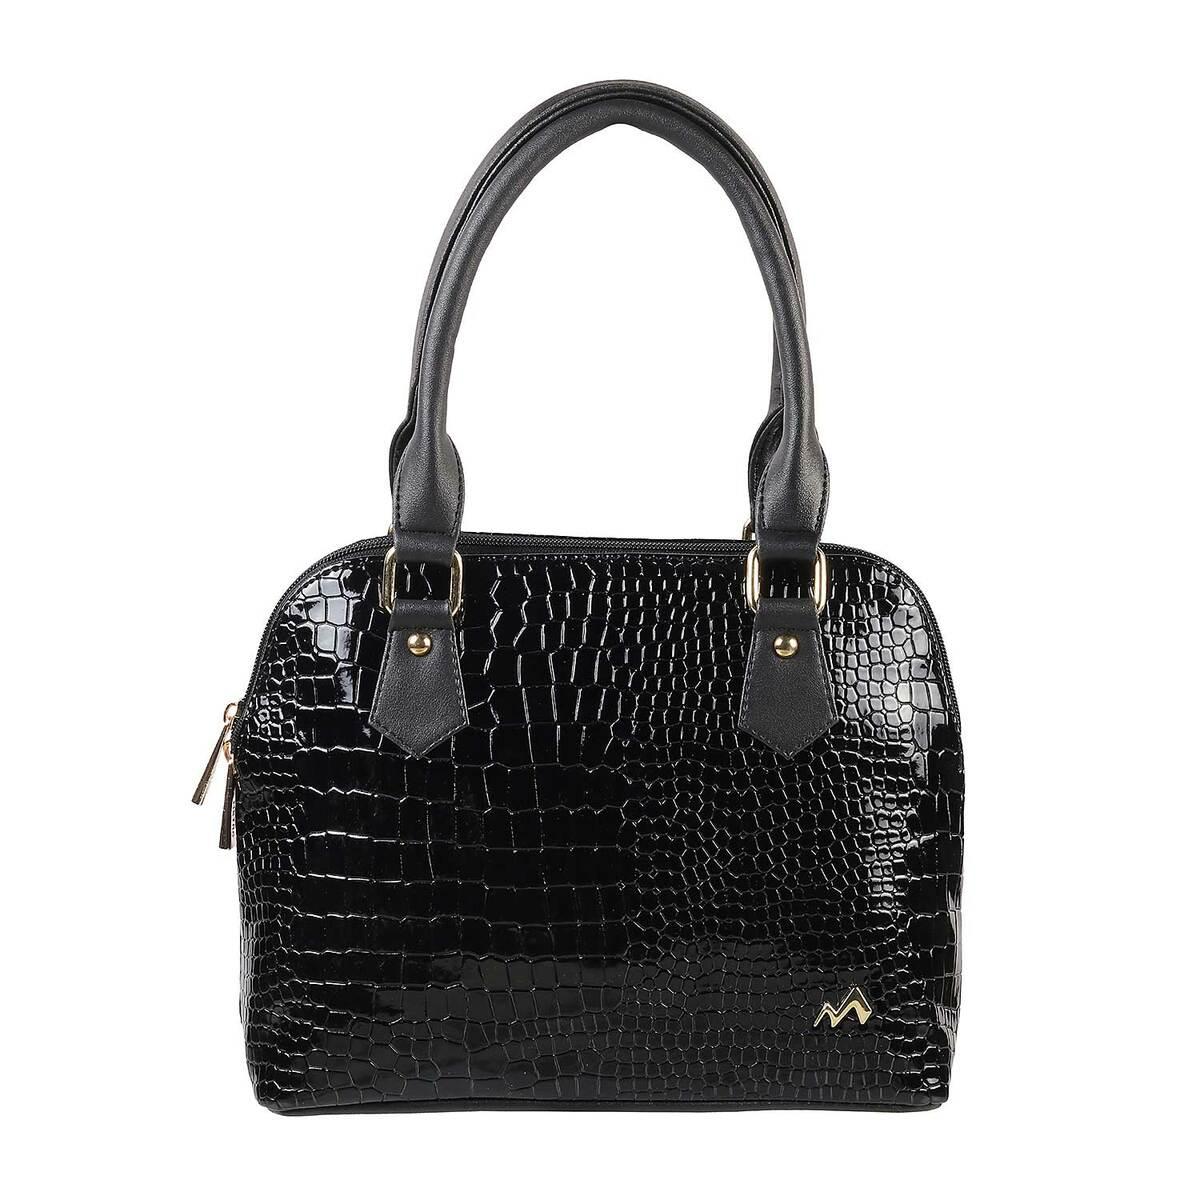 Buy Ananya Leather Handicraft Women Multicolor Handbag Shakuntala Brown  Online @ Best Price in India | Flipkart.com